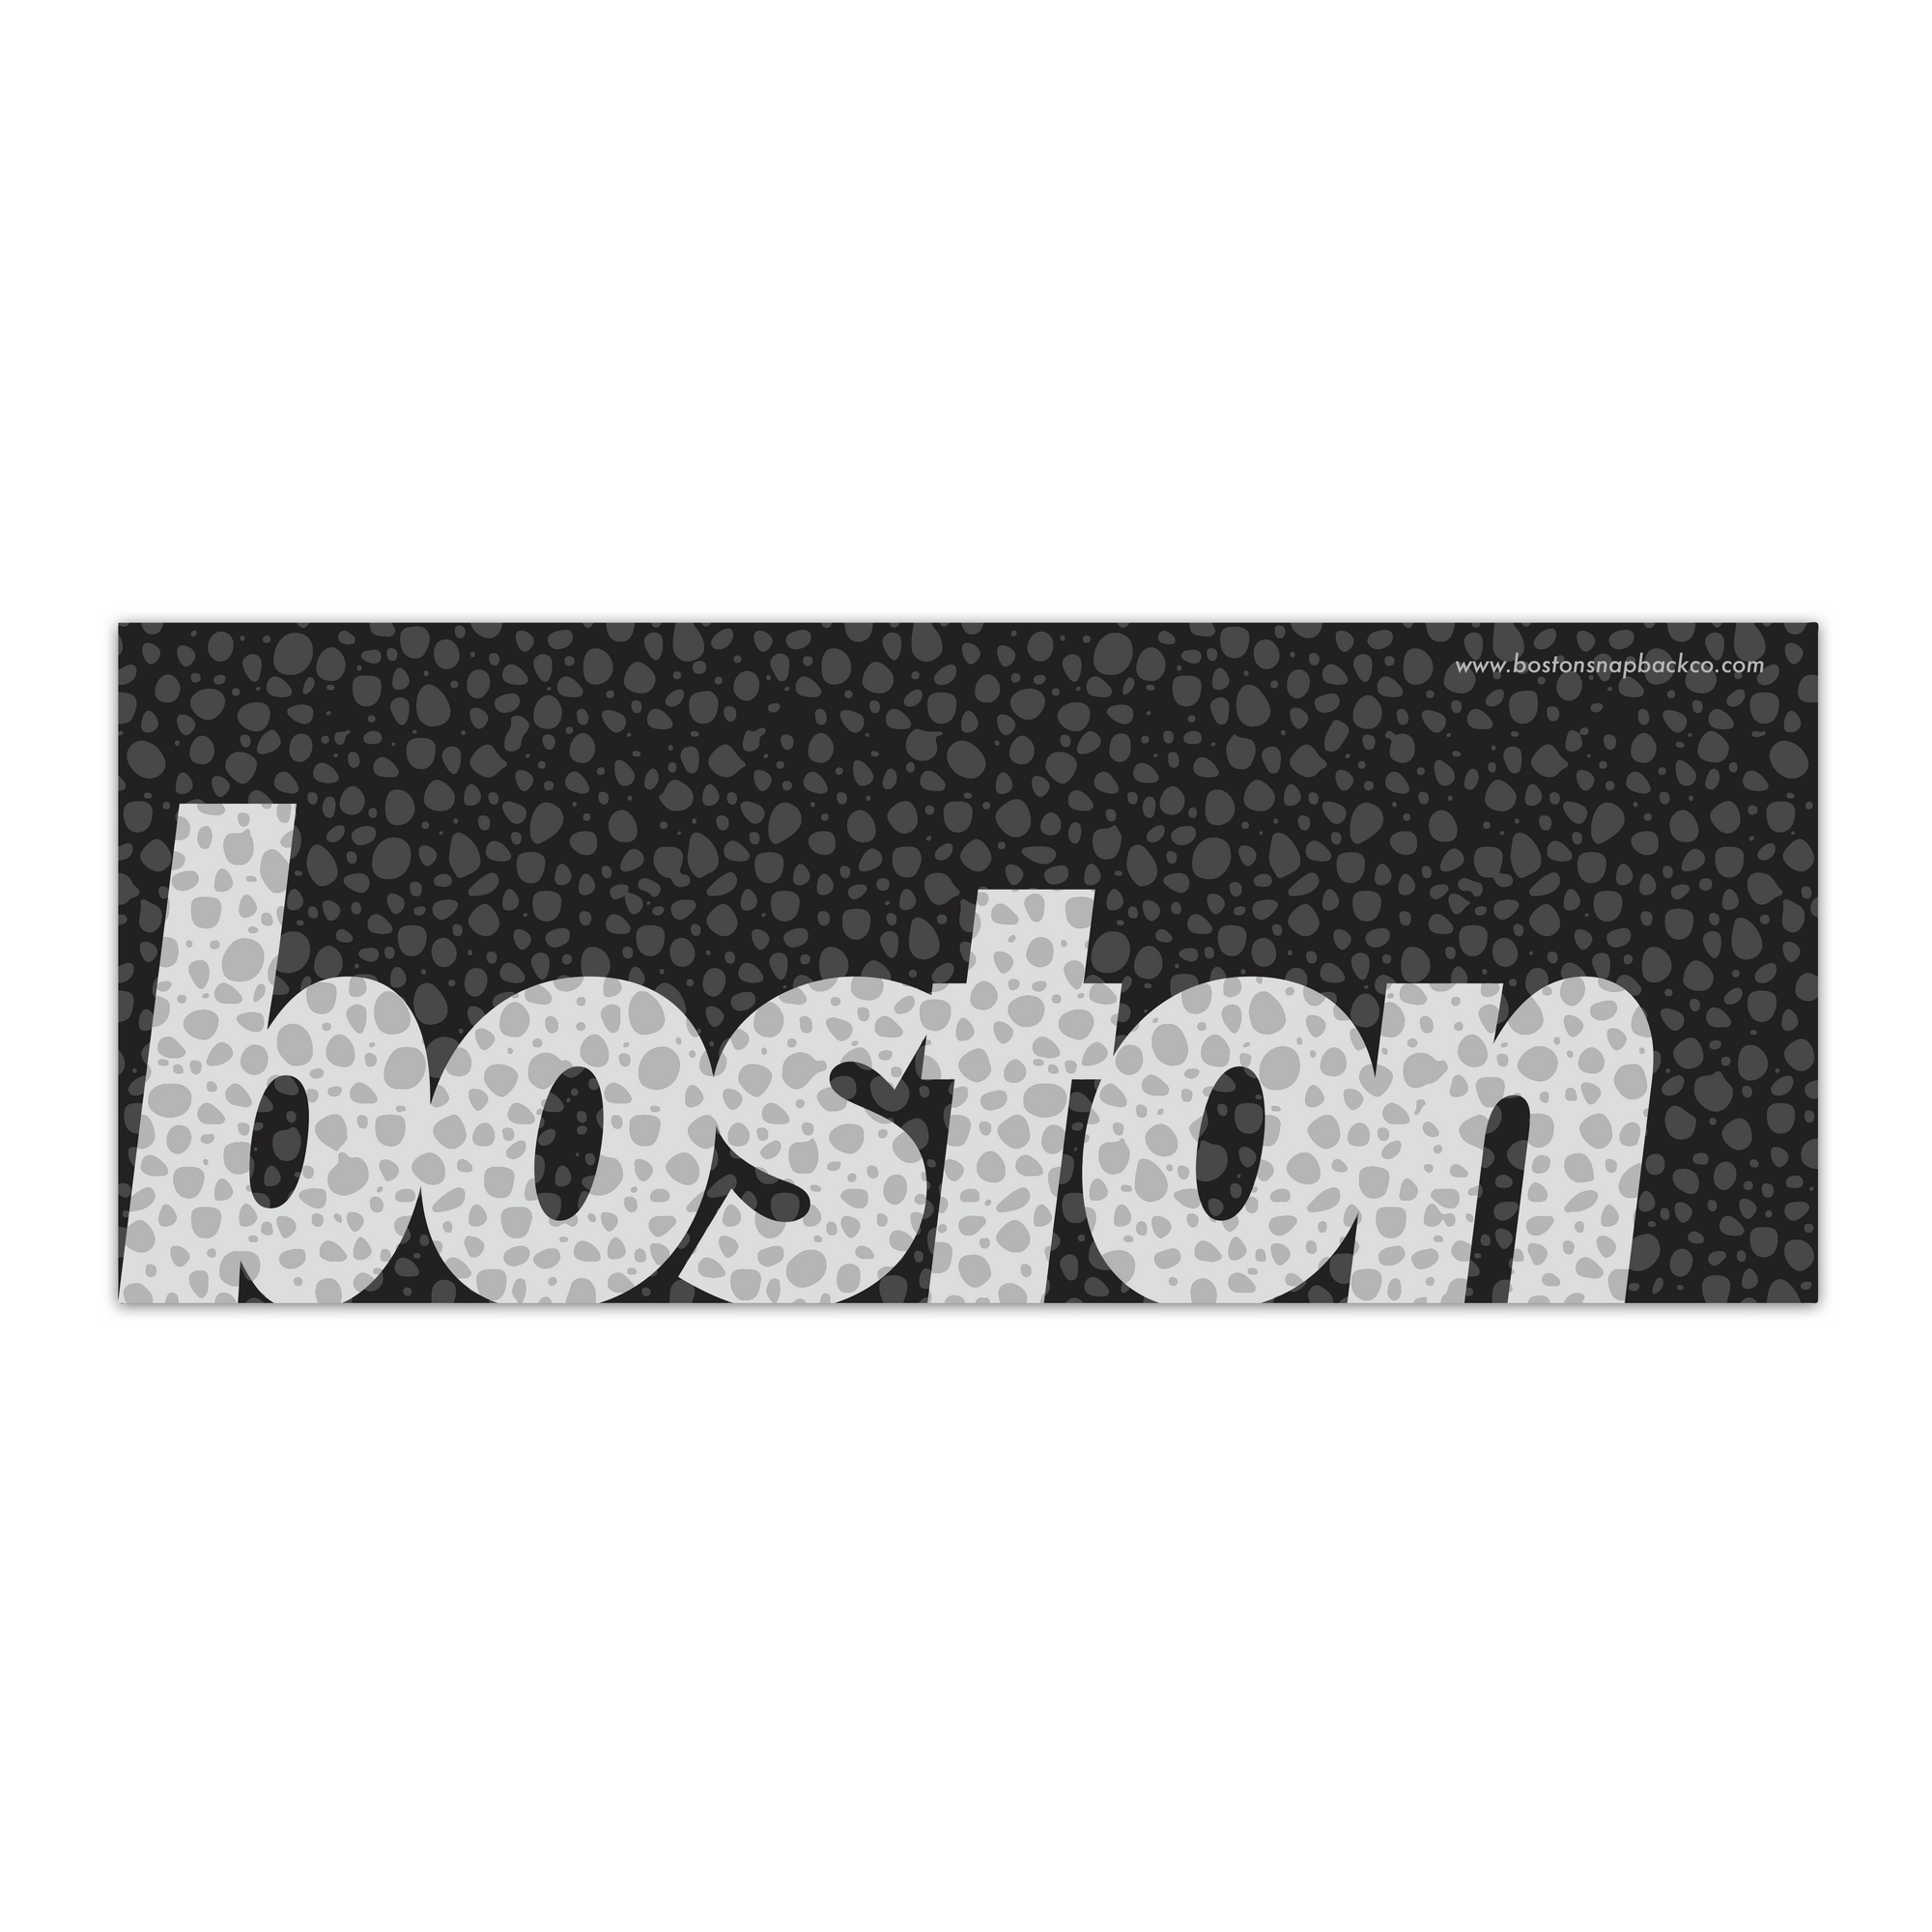 The Safari Sticker - Boston Snapback Company